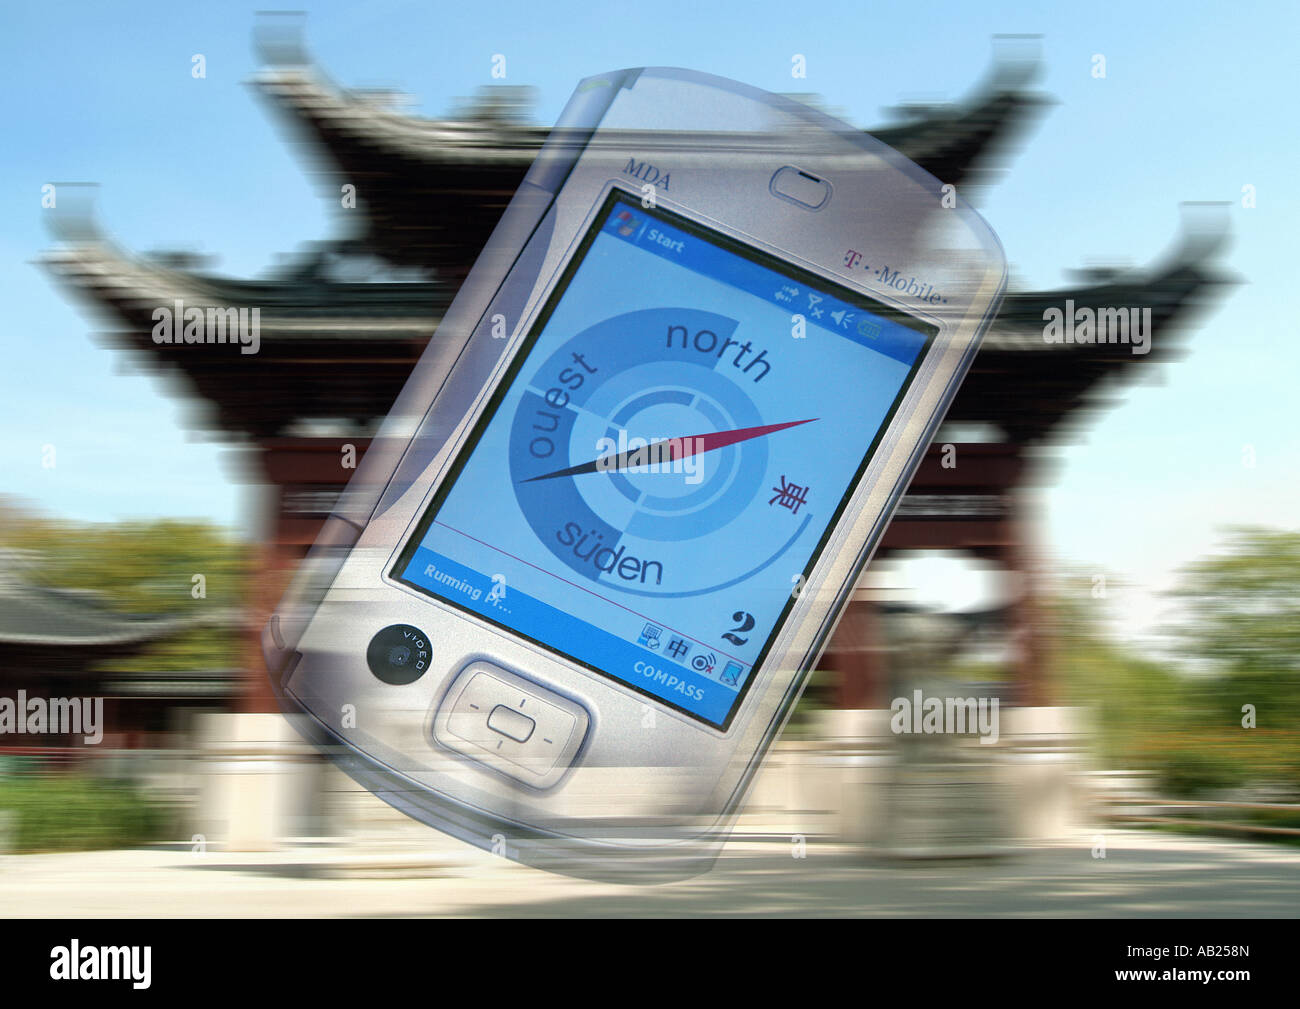 Navigation compas et le système d'information pour les visiteurs des jeux olympiques de Beijing 2008 Navigations und Infosystem Boussole Banque D'Images